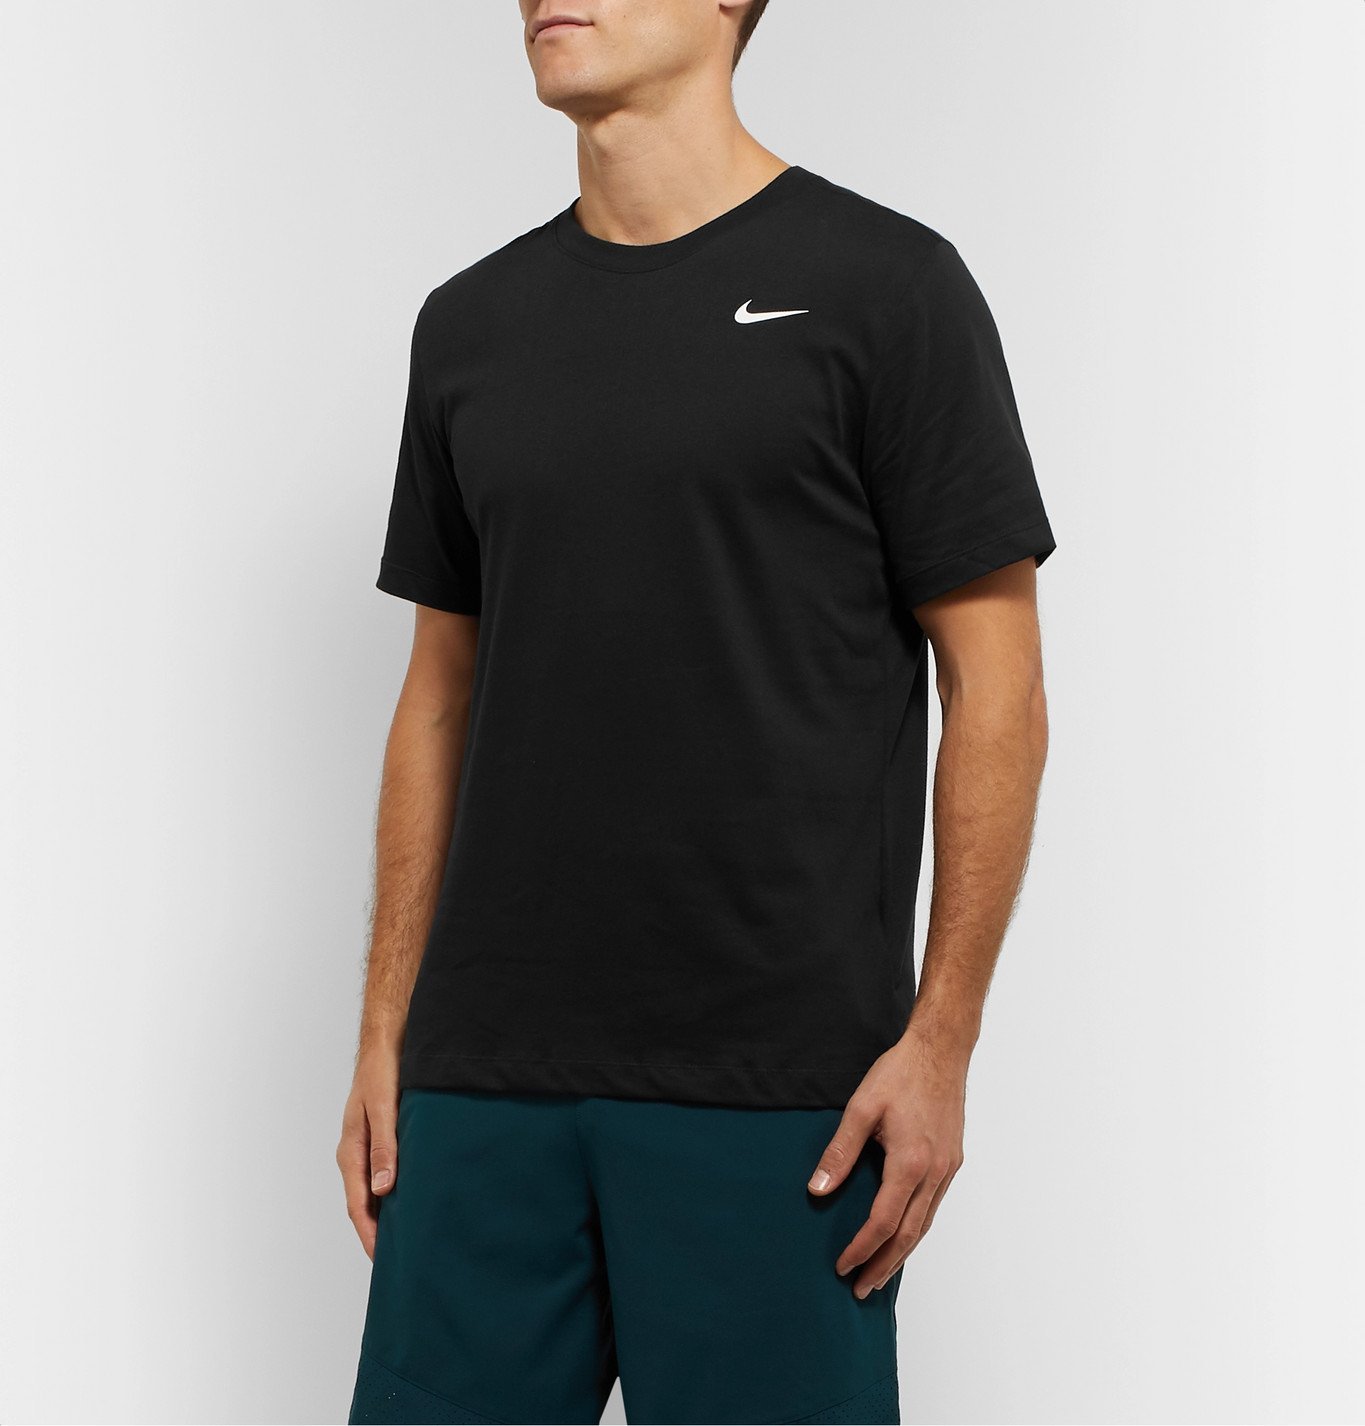 Nike Training - Cotton-Blend Dri-FIT T-Shirt - Black Nike Training